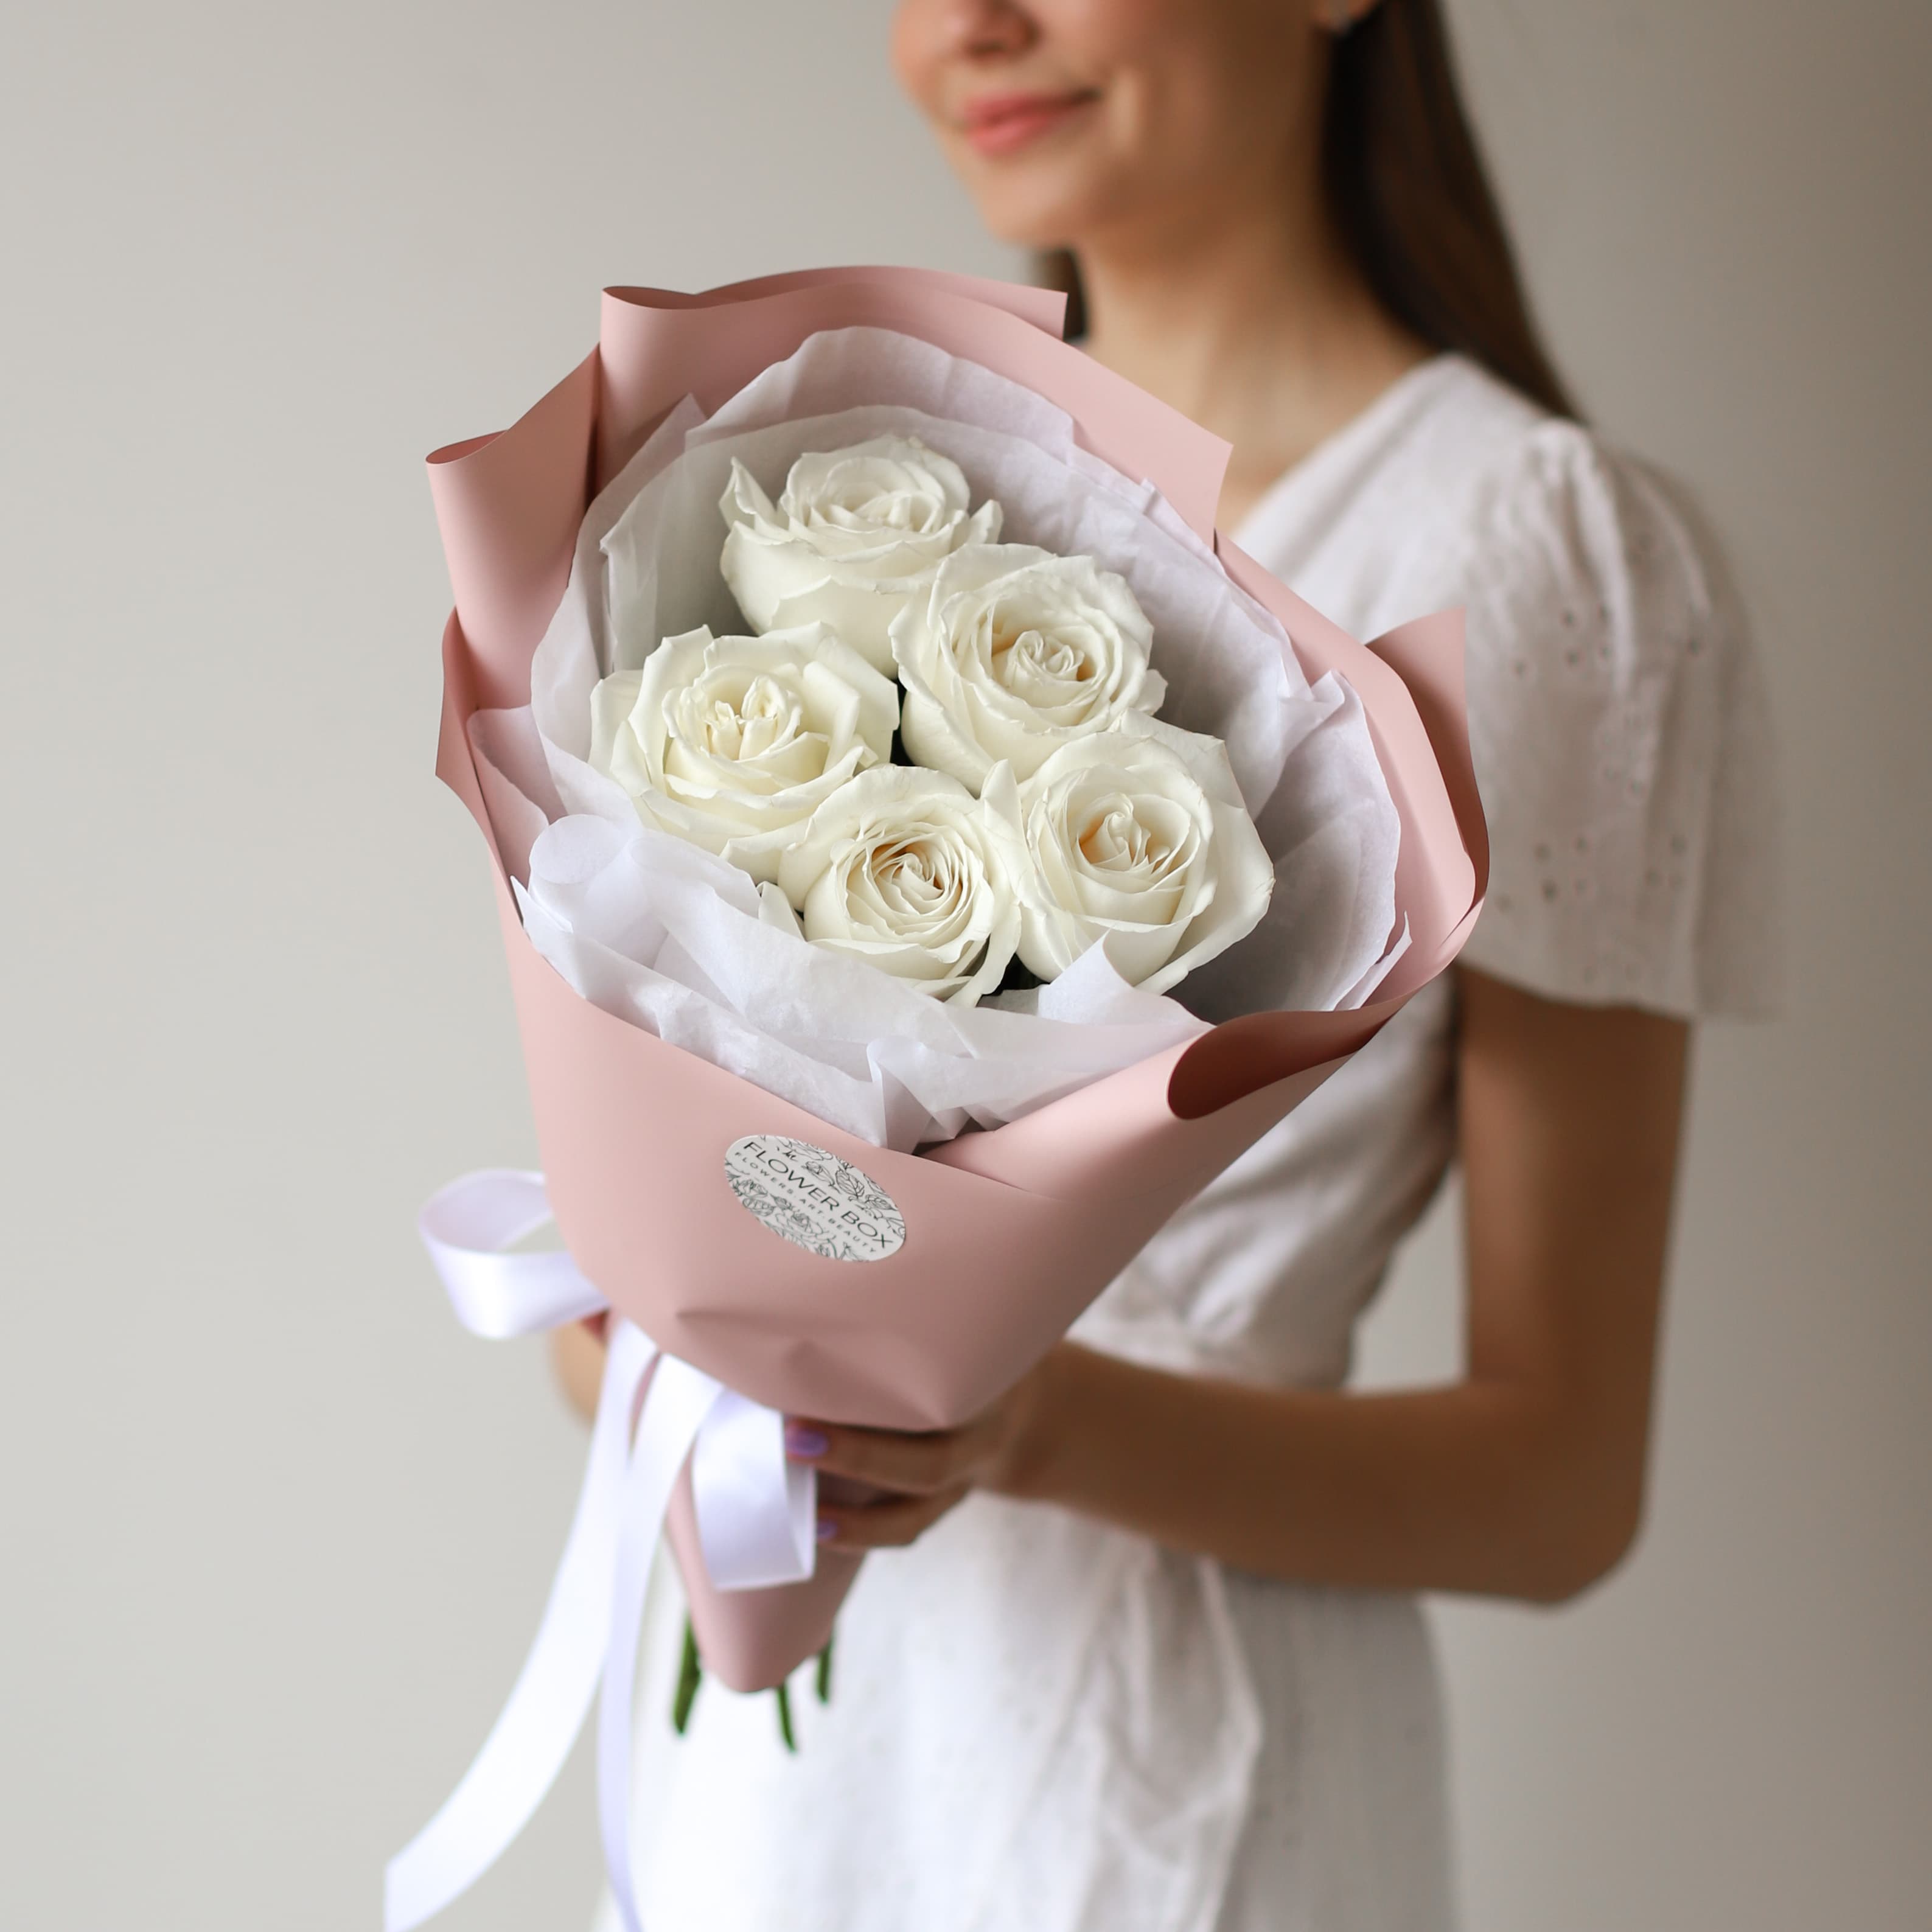 Белые розы в нежном оформлении (5 шт) №1574 - Фото 38